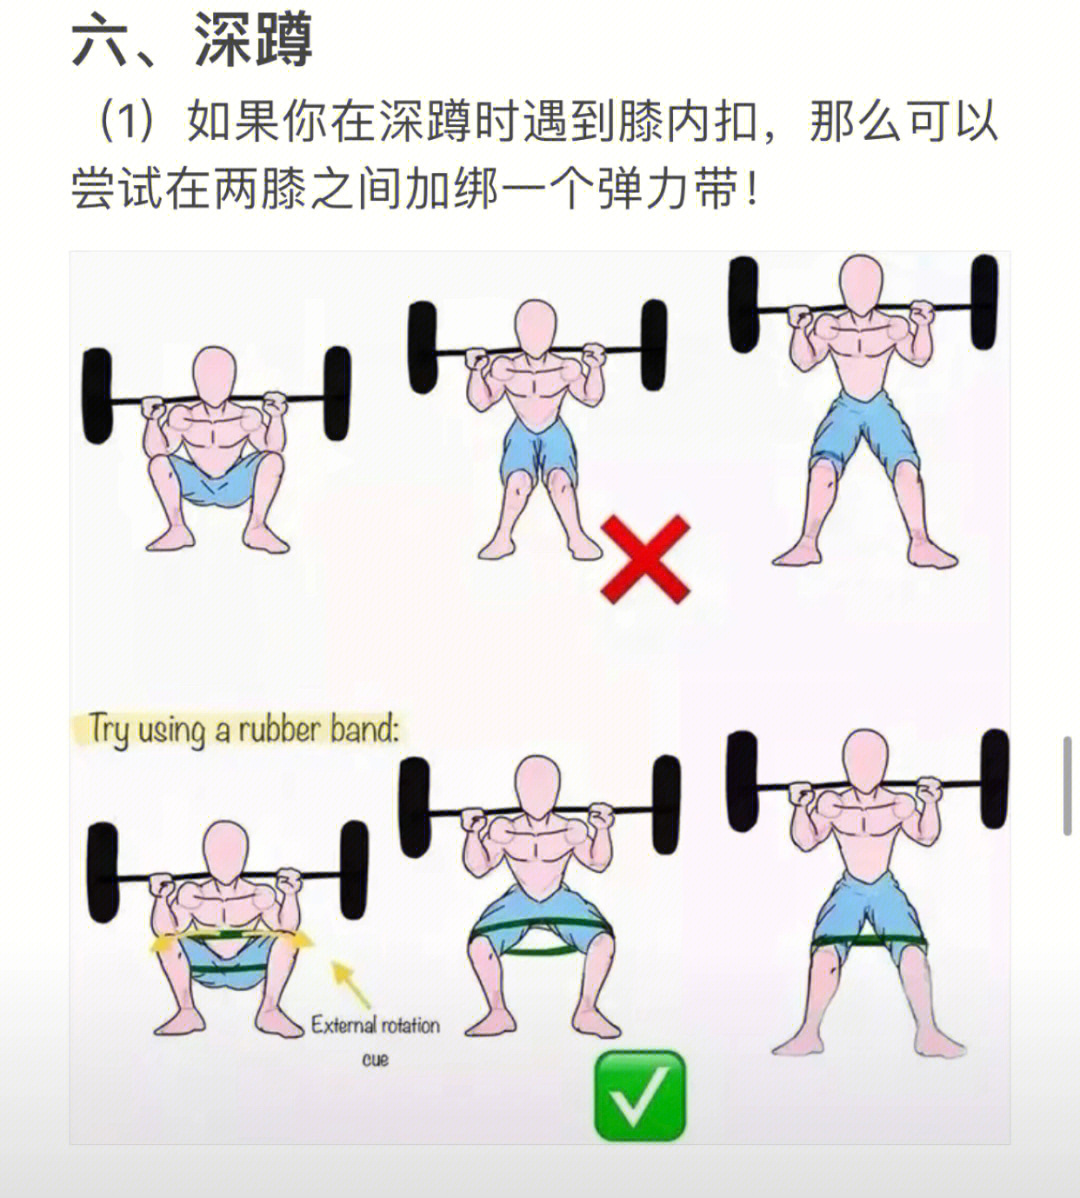 小杠铃锻炼方法图解图片